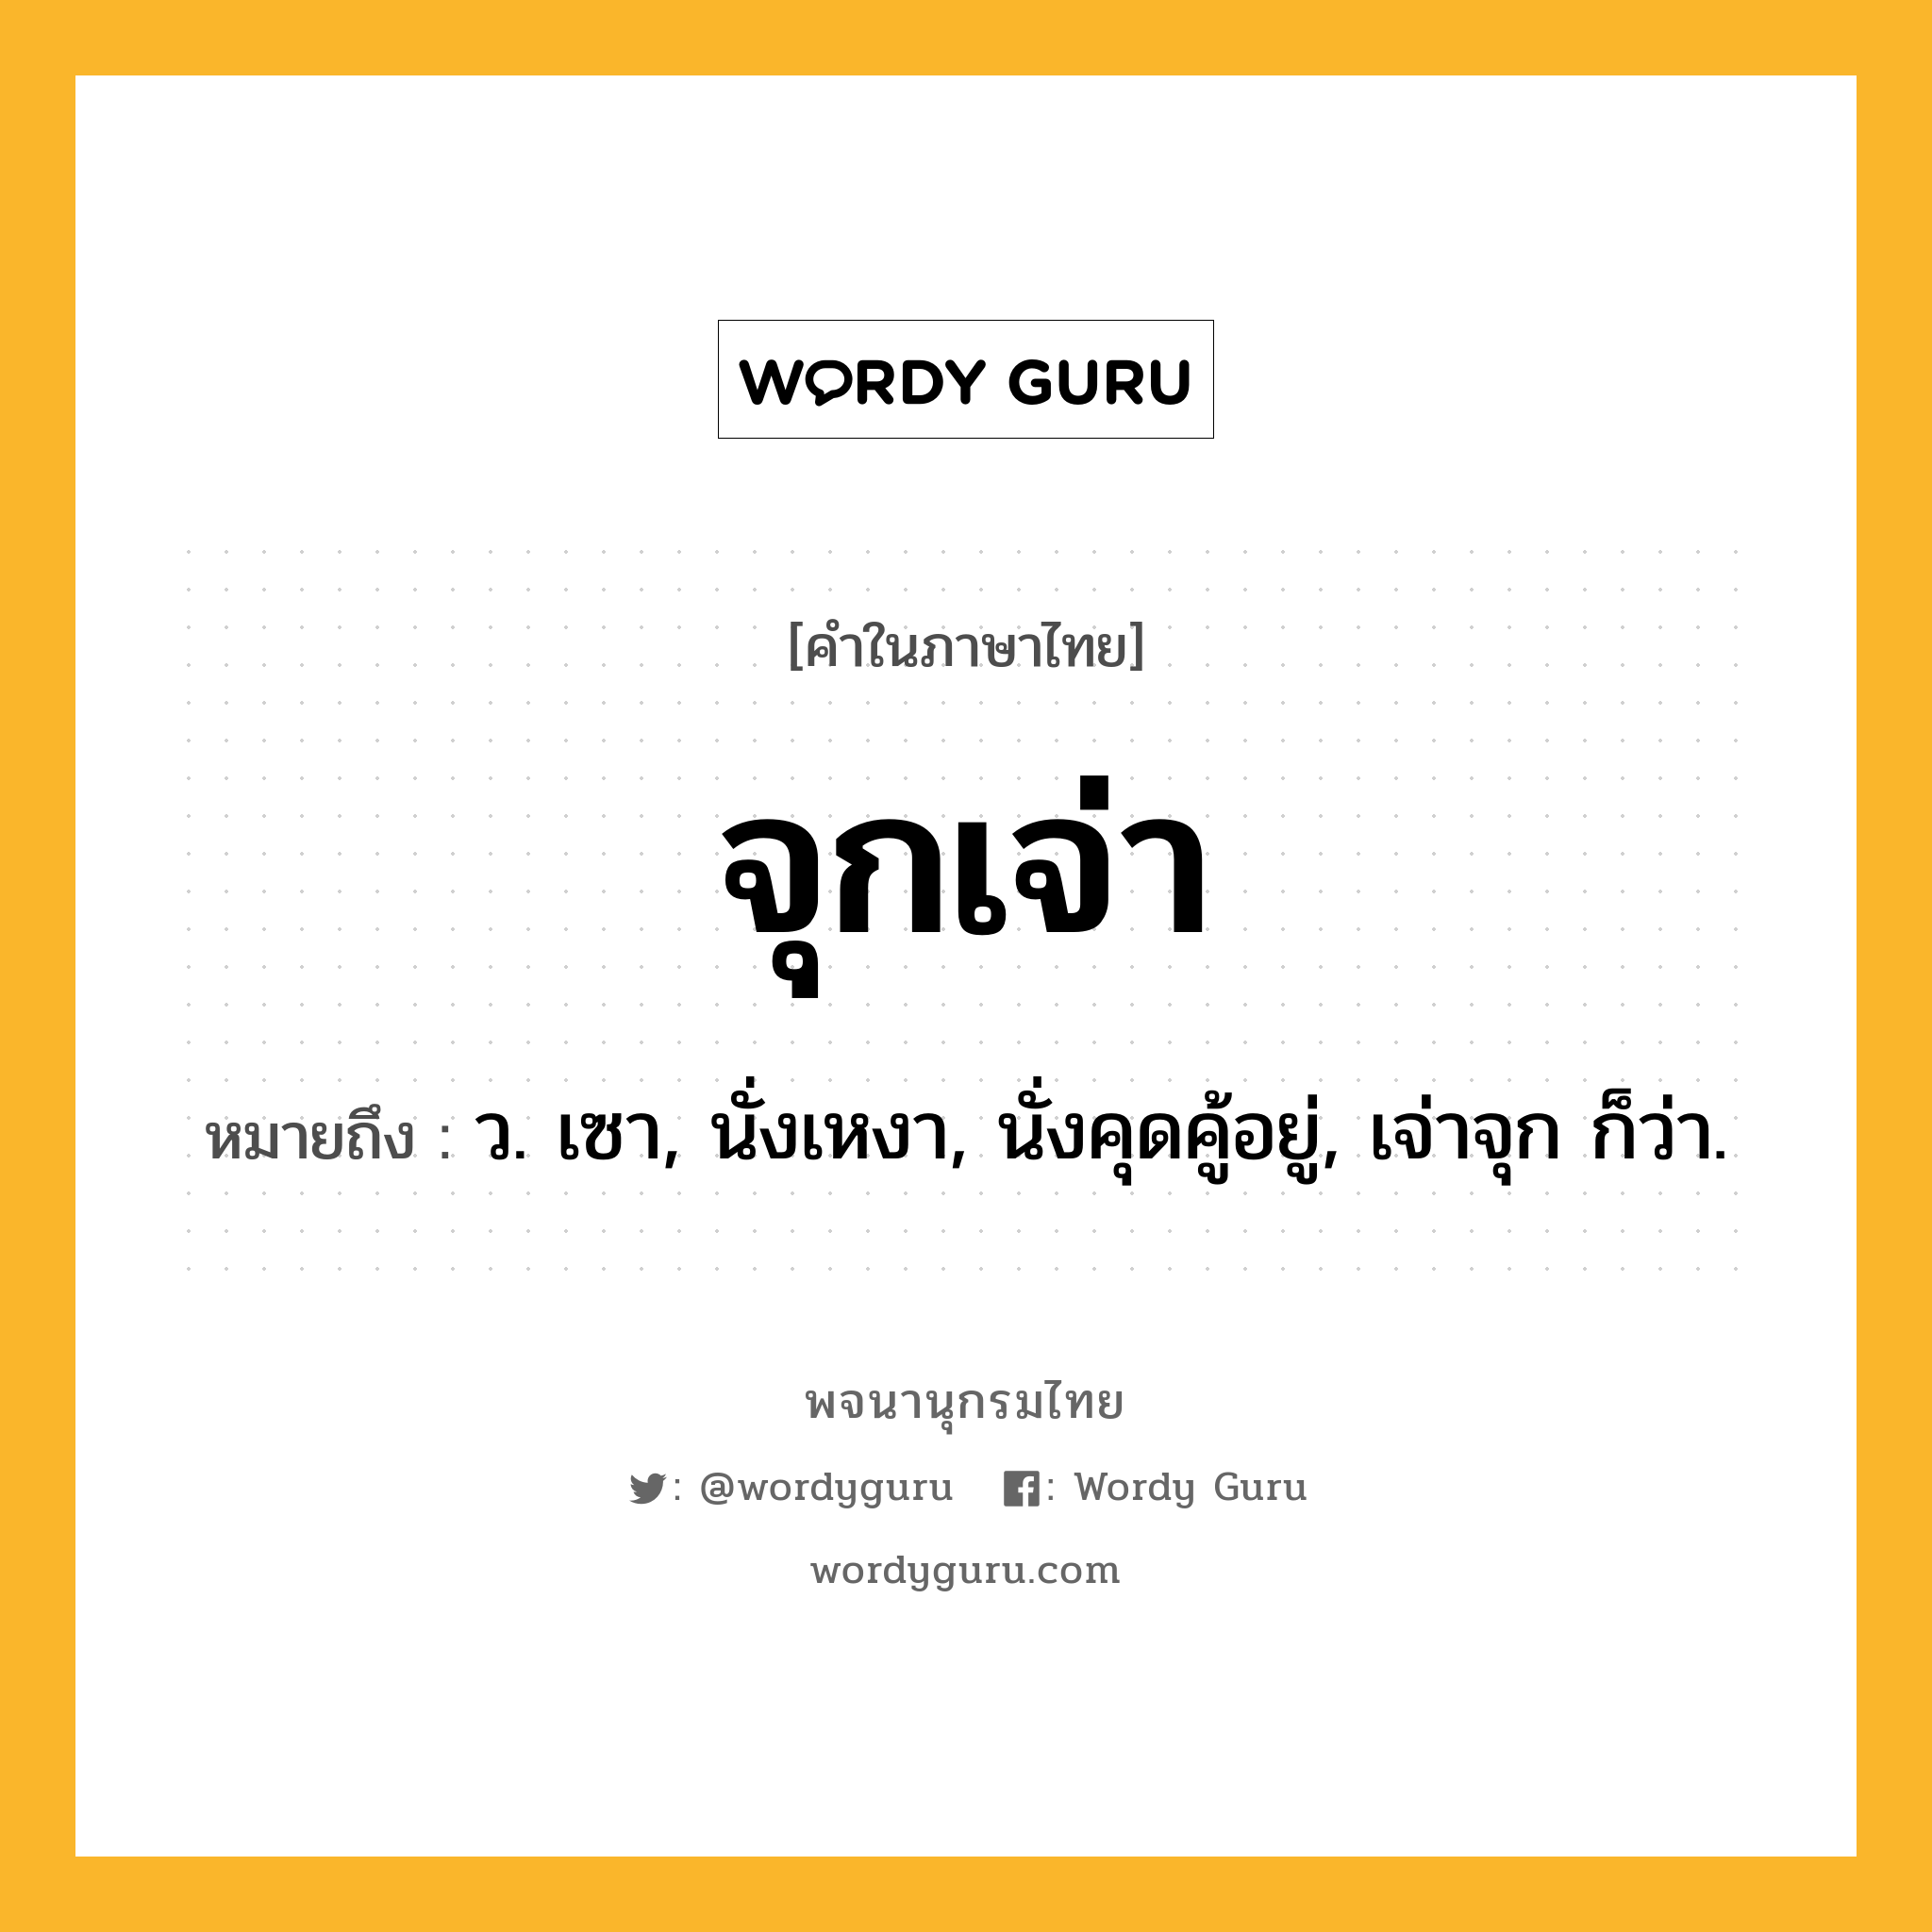 จุกเจ่า หมายถึงอะไร?, คำในภาษาไทย จุกเจ่า หมายถึง ว. เซา, นั่งเหงา, นั่งคุดคู้อยู่, เจ่าจุก ก็ว่า.